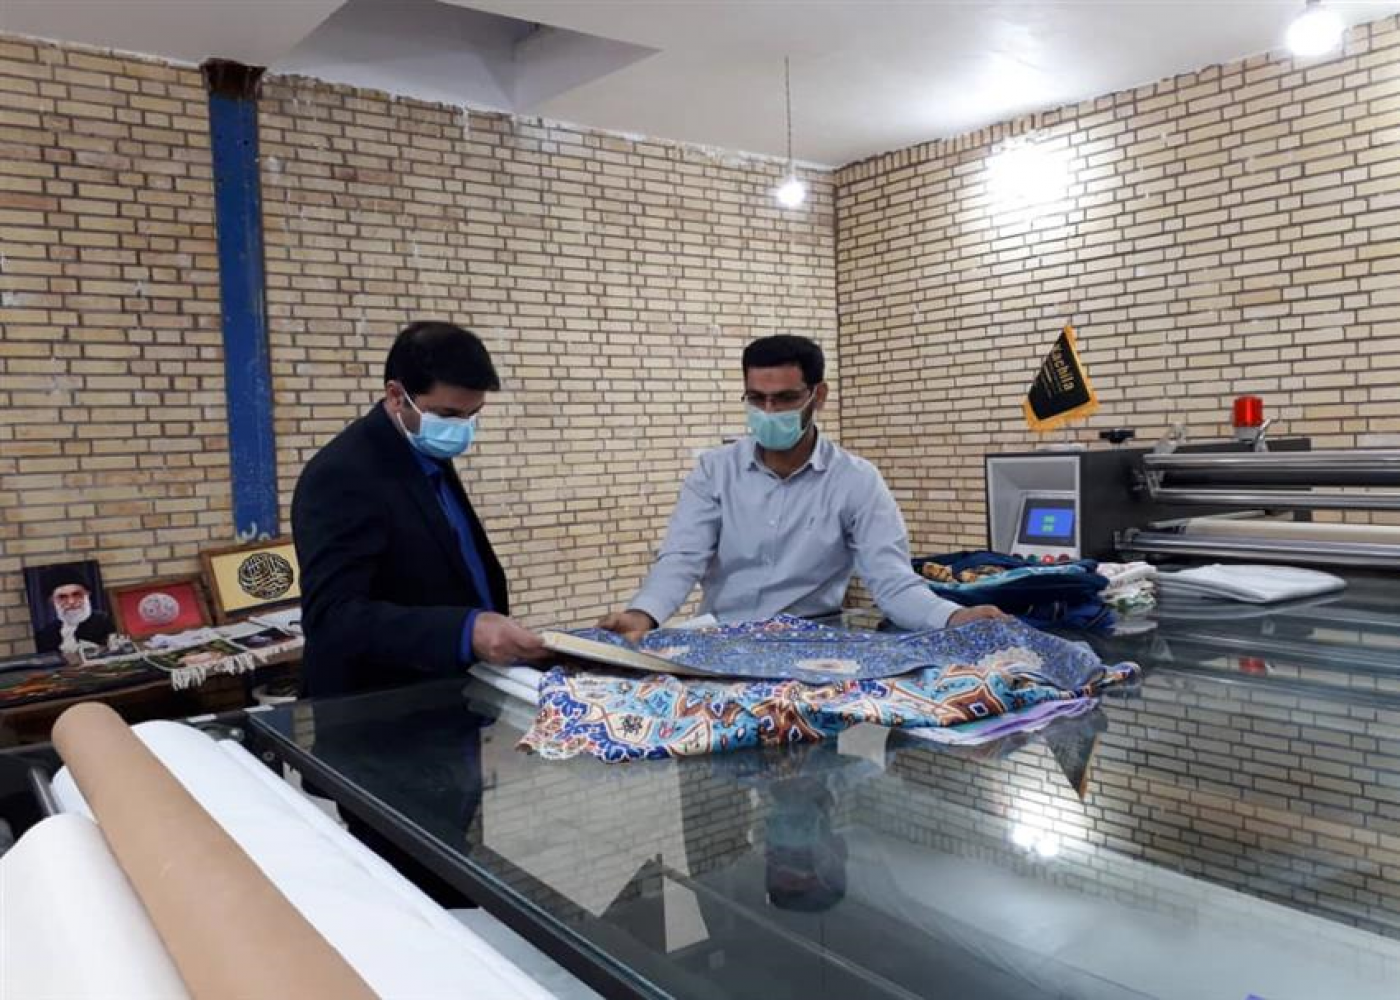 بازدید مدیران طرح توسعه مشاغل خانگی خوزستان از مرکز چاپ سابلیمیشن کاچیلا در اهواز